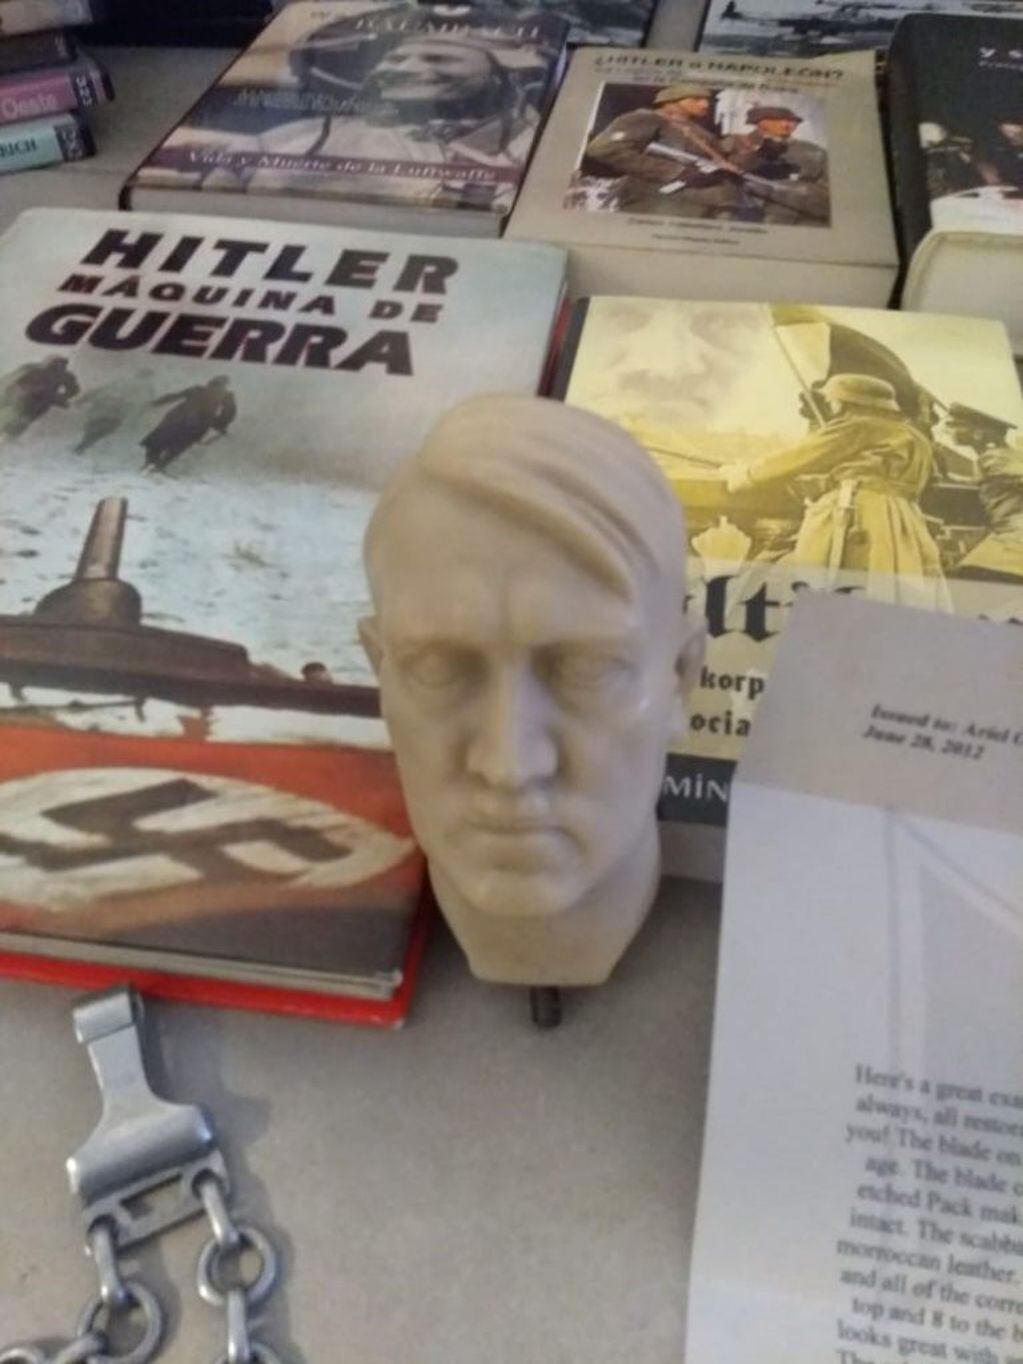 Los objetos con imágenes vinculadas al nazismo fueron secuestrados por la Justicia Federal de Córdoba en tres domicilios de la provincia.